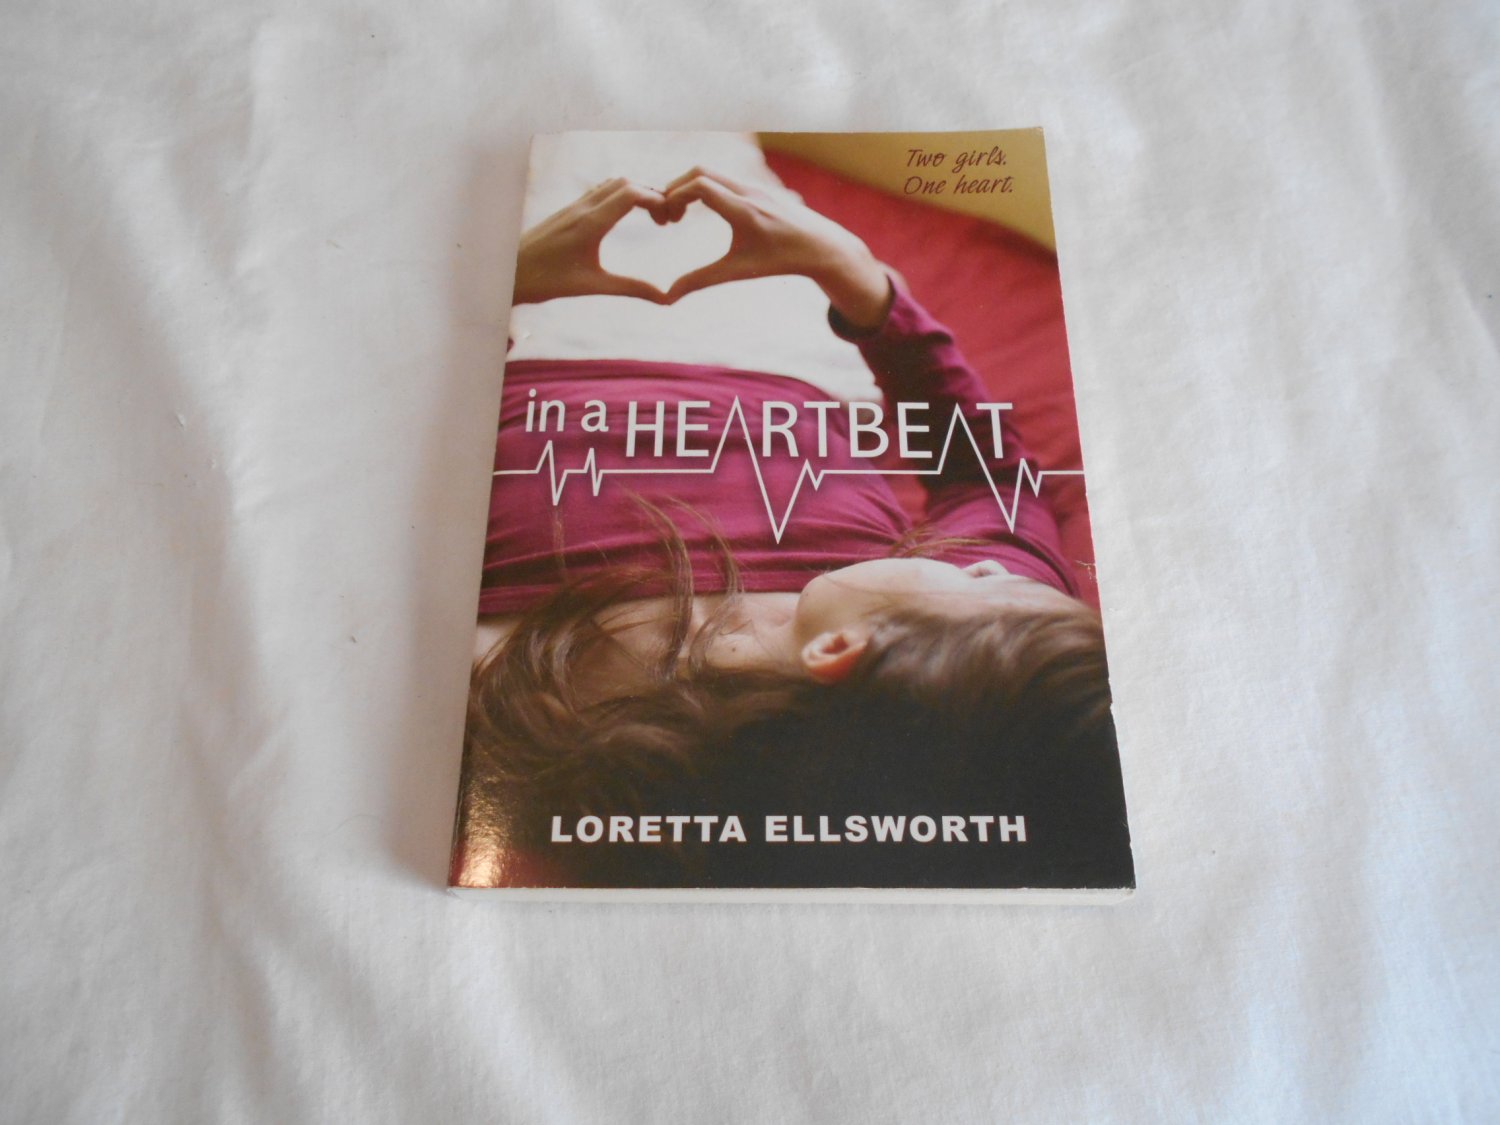 In a Heartbeat by Loretta Ellsworth